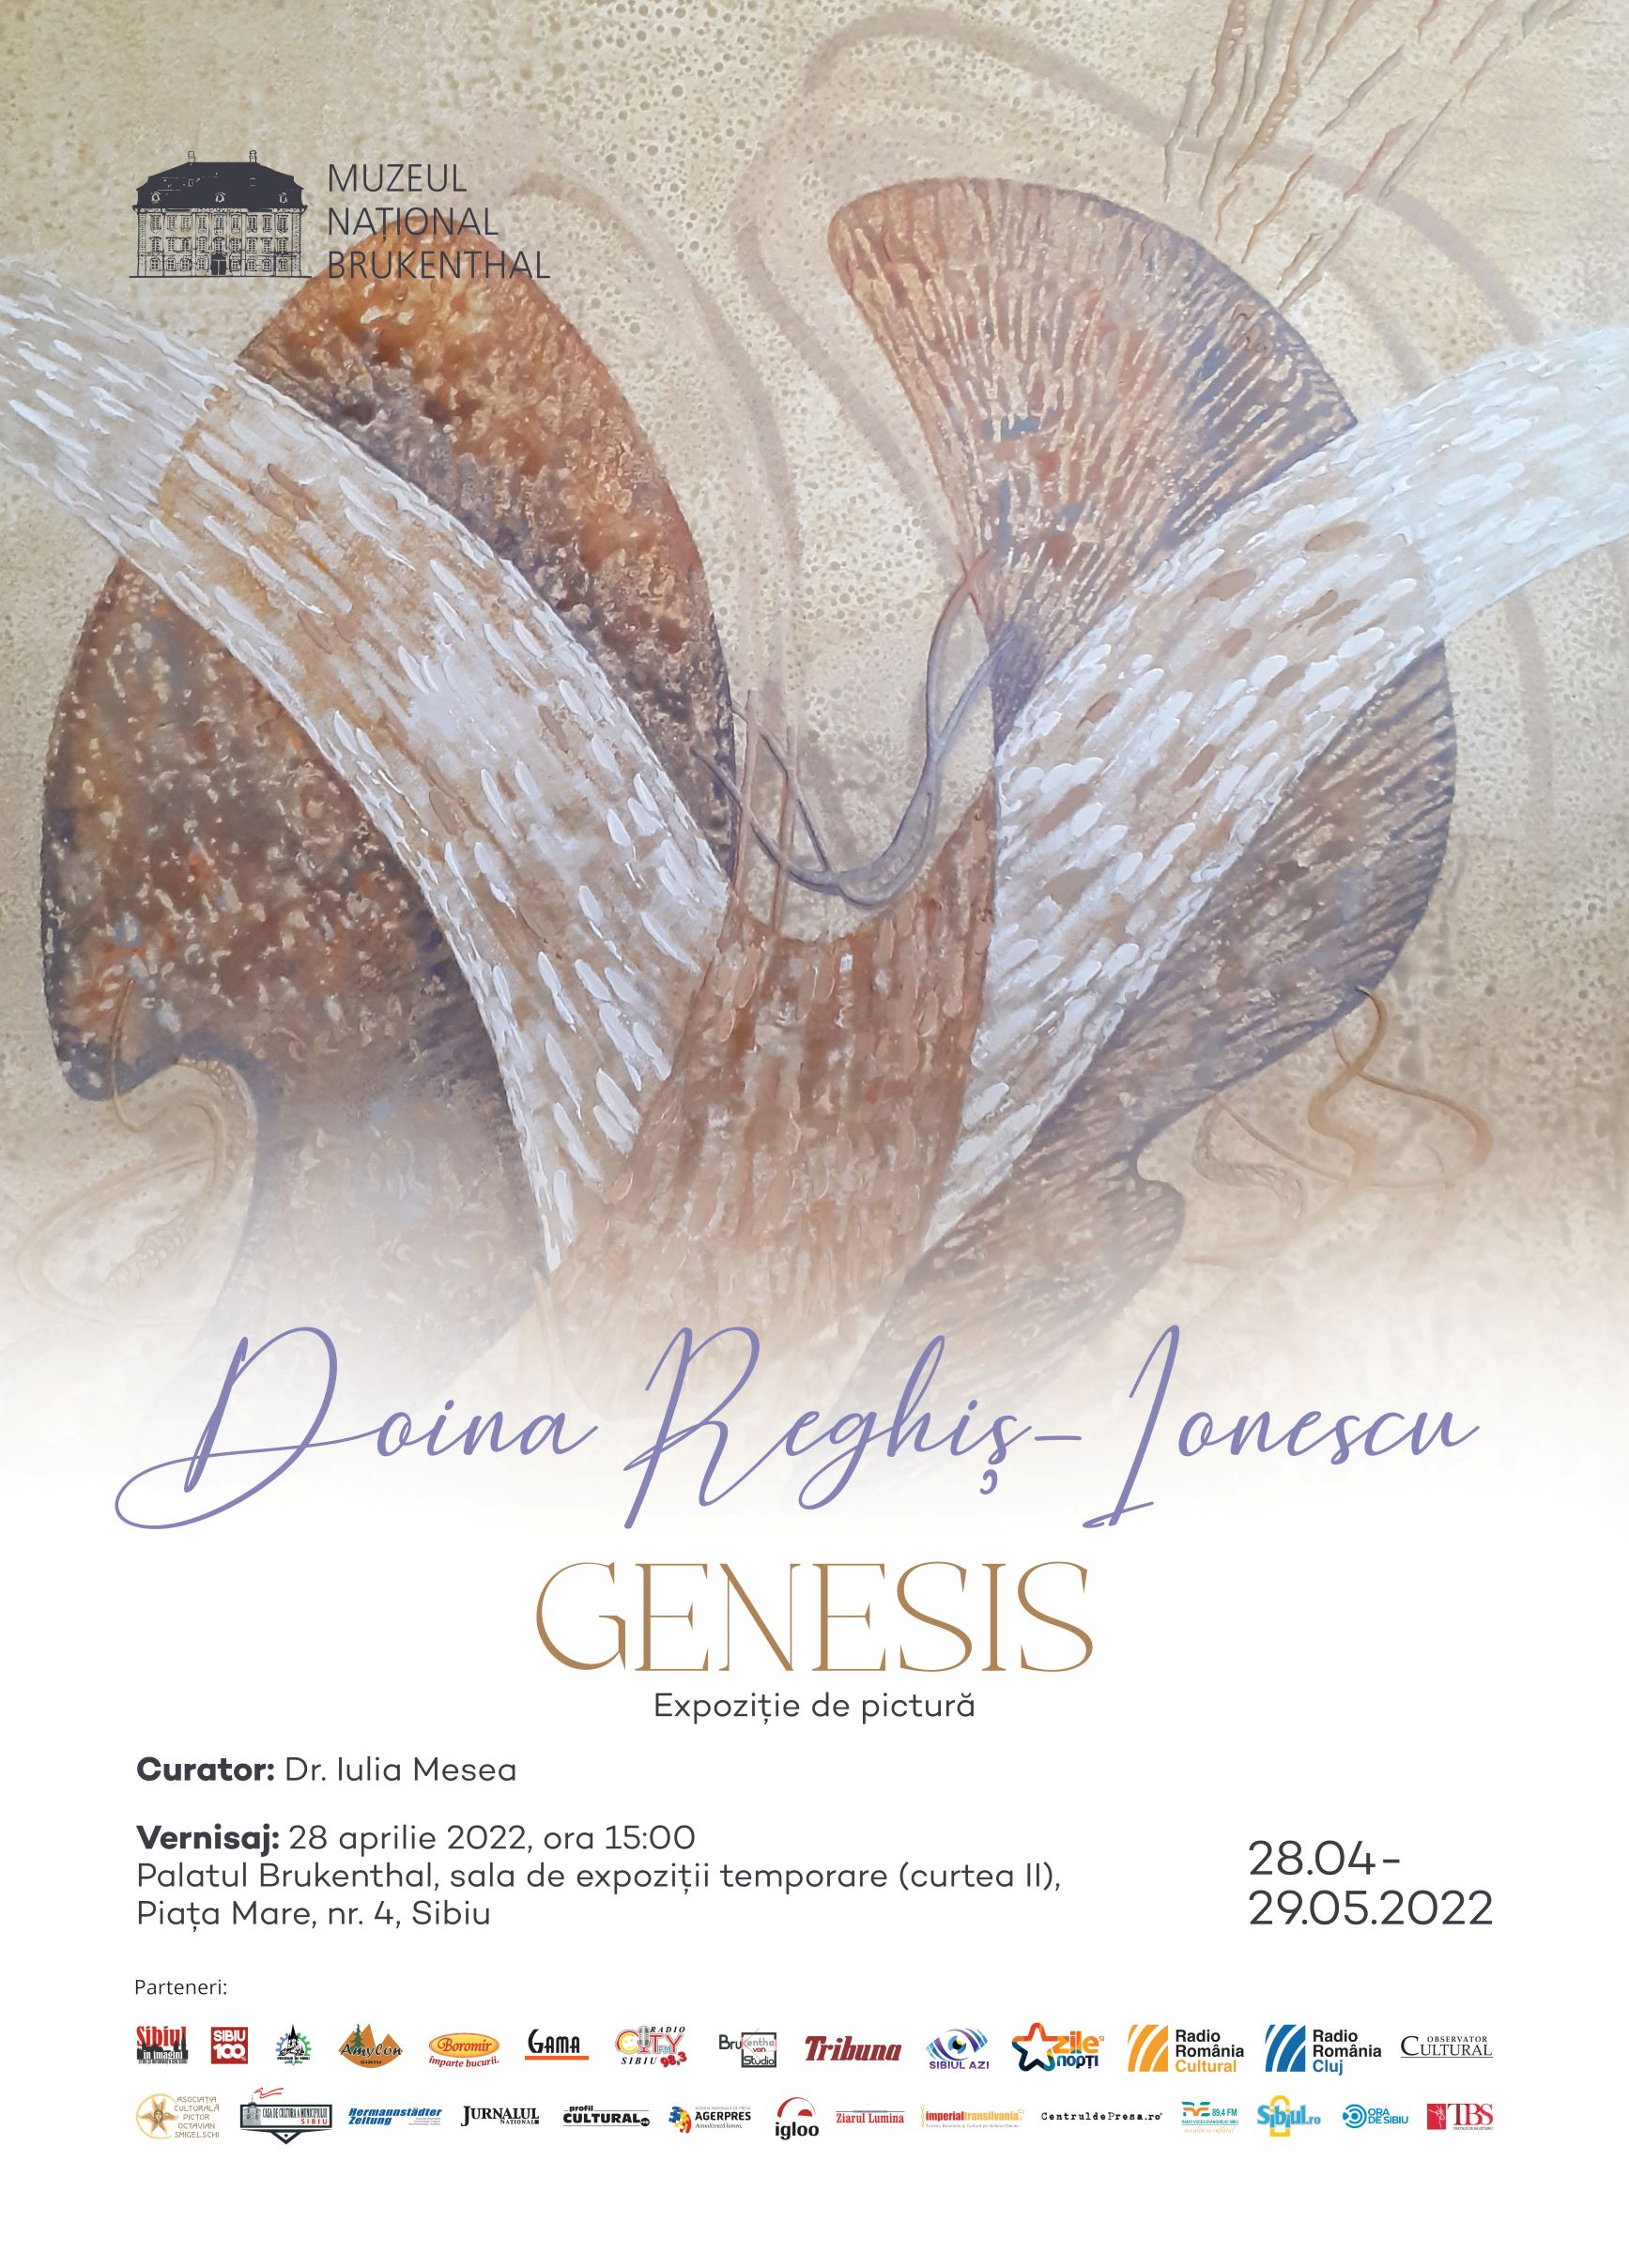 Genesis-Doina Reghis-Ionescu